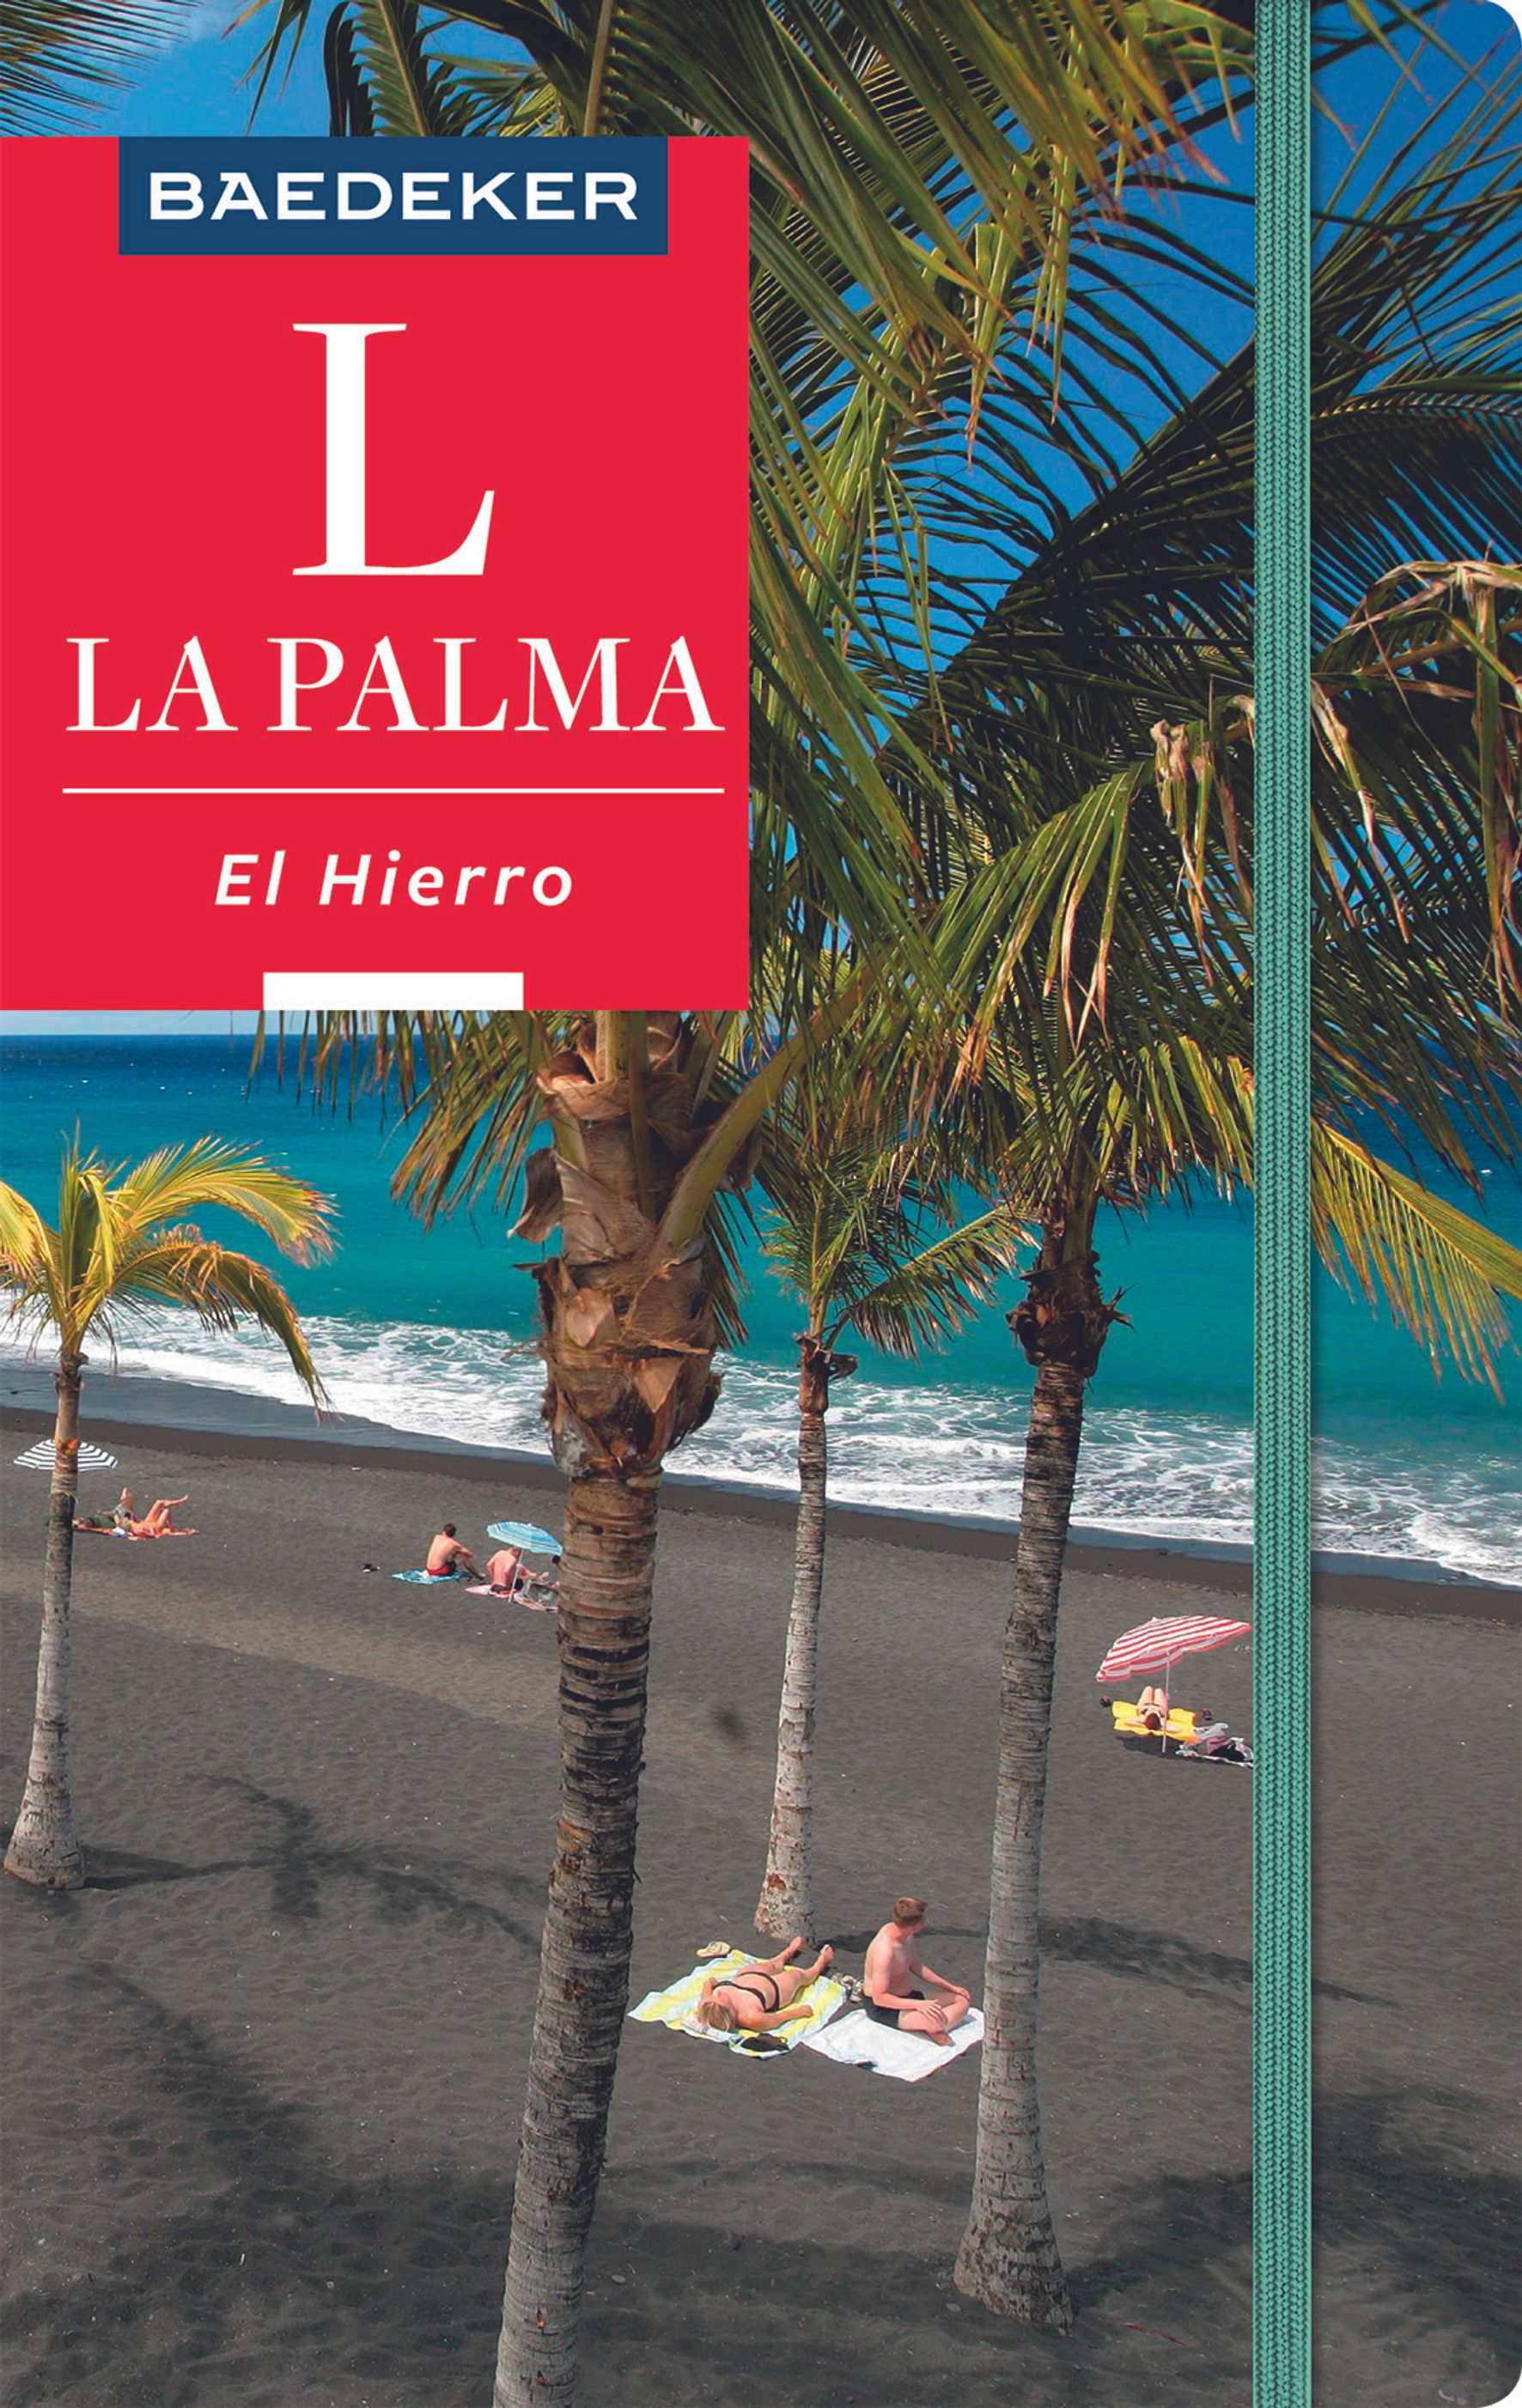 Baedeker La Palma, El Hierro (eBook)